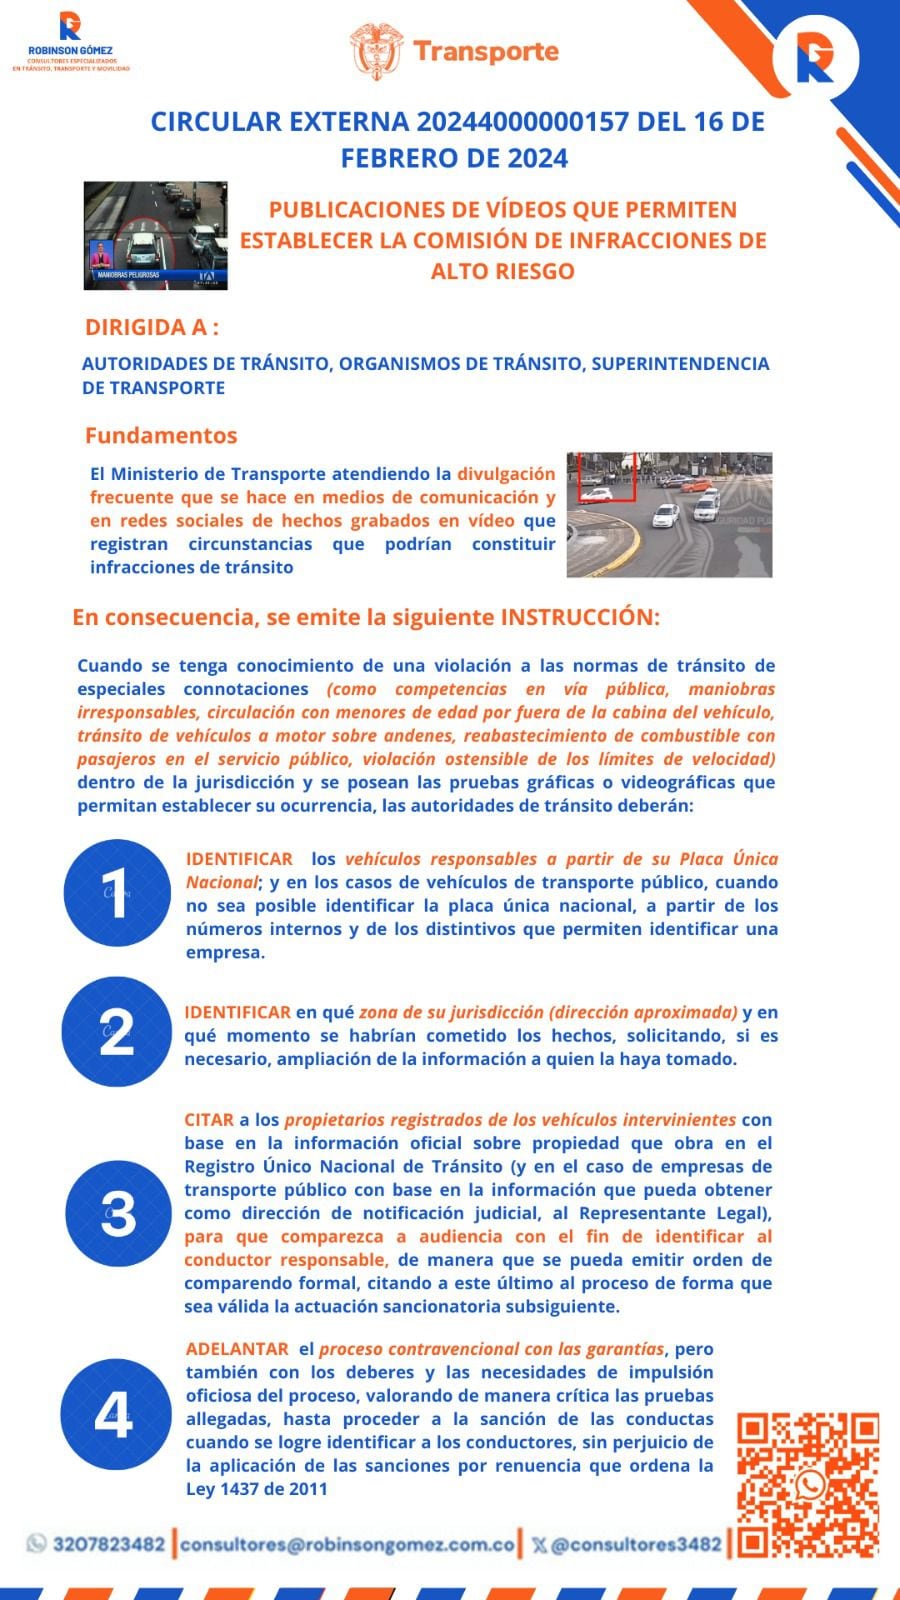 El Ministerio de Transporte compartió una infografía con el detalle de la circular.